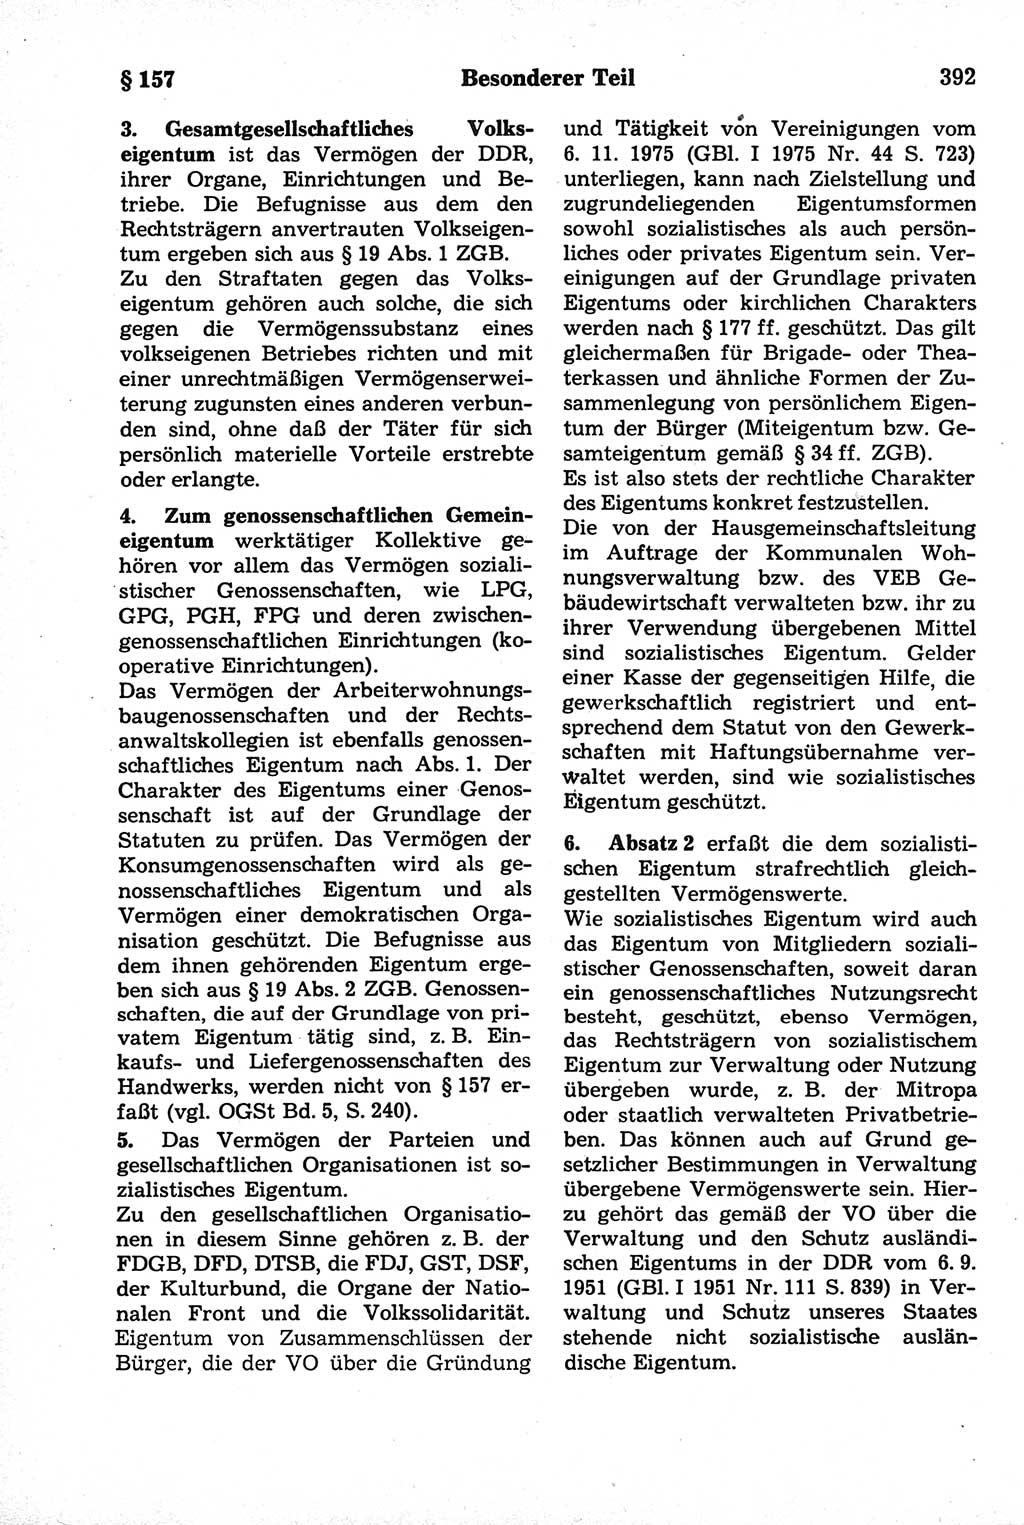 Strafrecht der Deutschen Demokratischen Republik (DDR), Kommentar zum Strafgesetzbuch (StGB) 1981, Seite 392 (Strafr. DDR Komm. StGB 1981, S. 392)